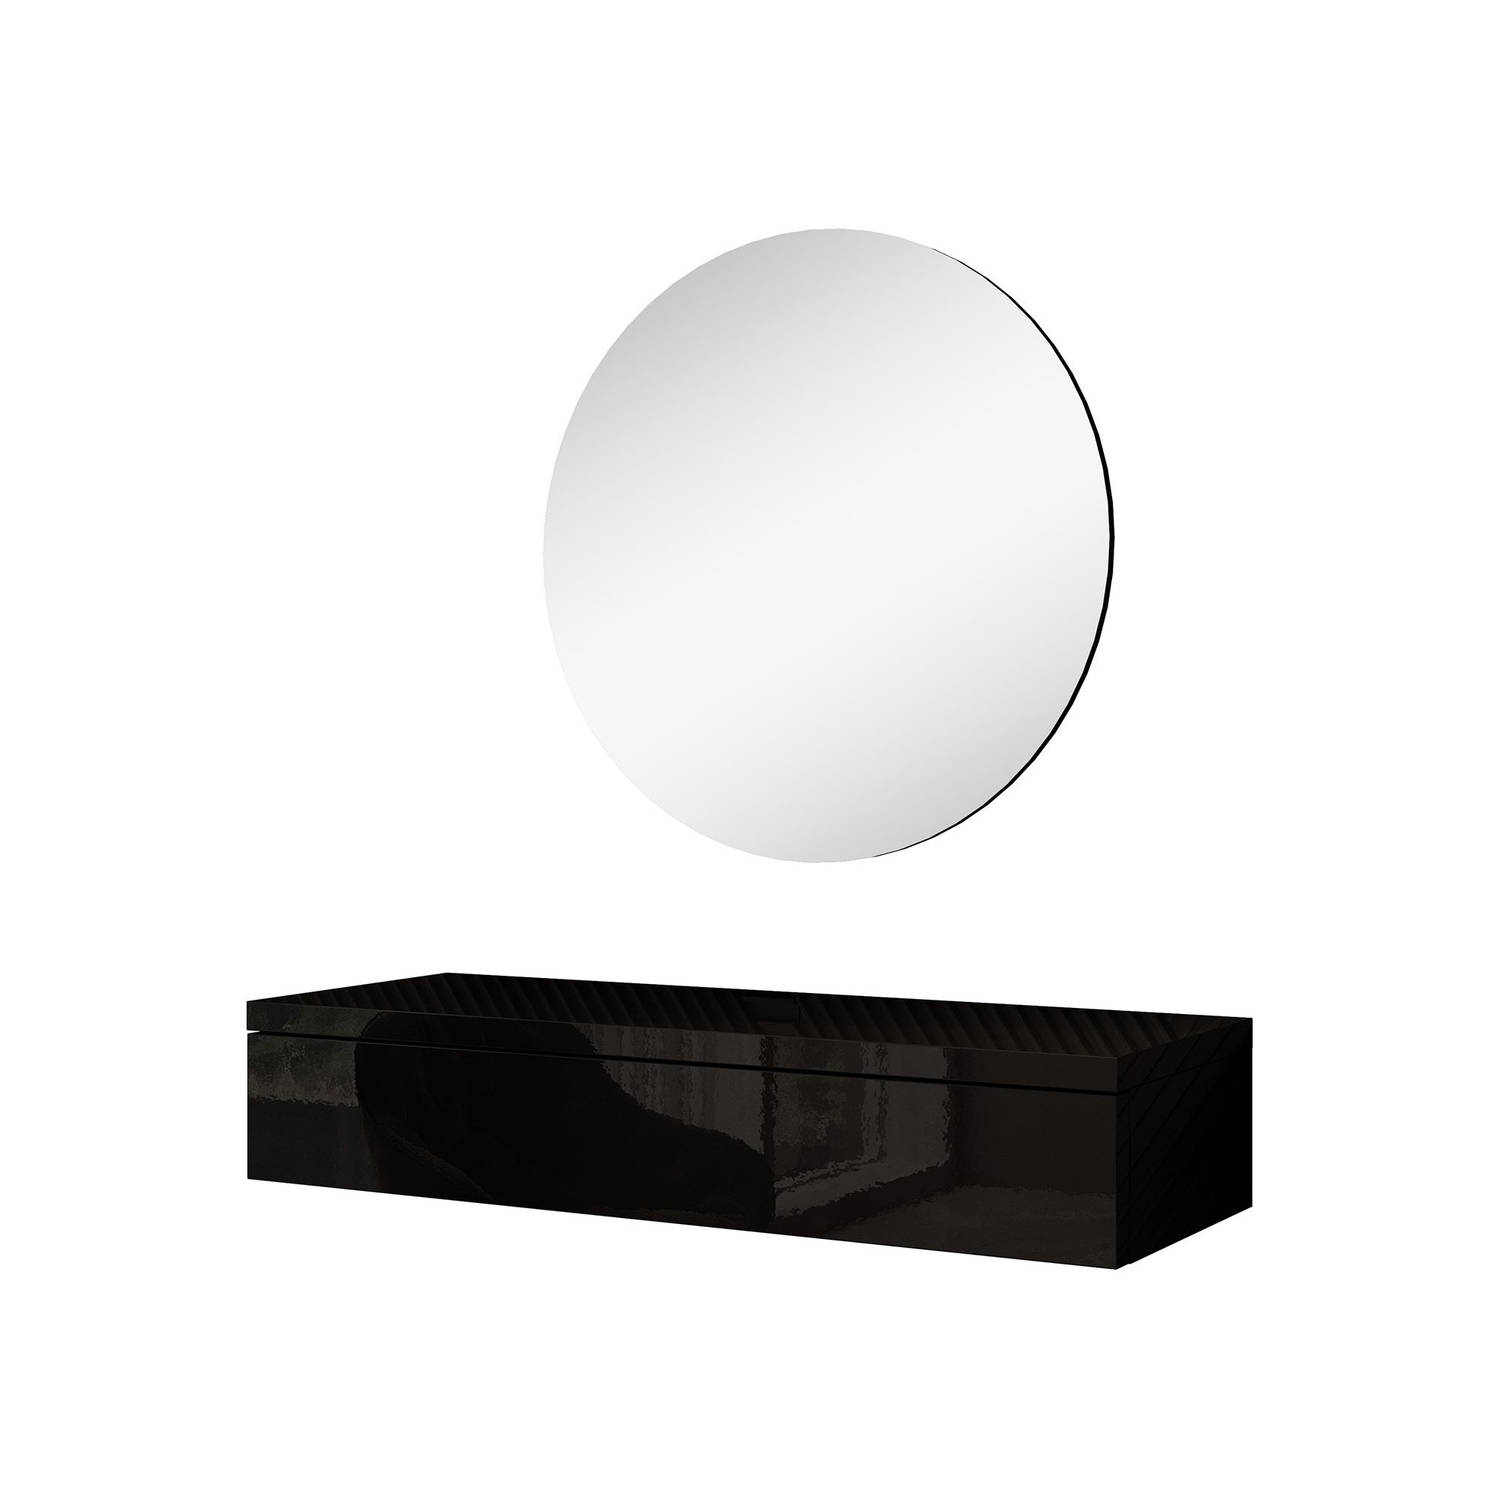 Meubella - Kaptafel Amaretto - Zwart - 100 cm - Met spiegel